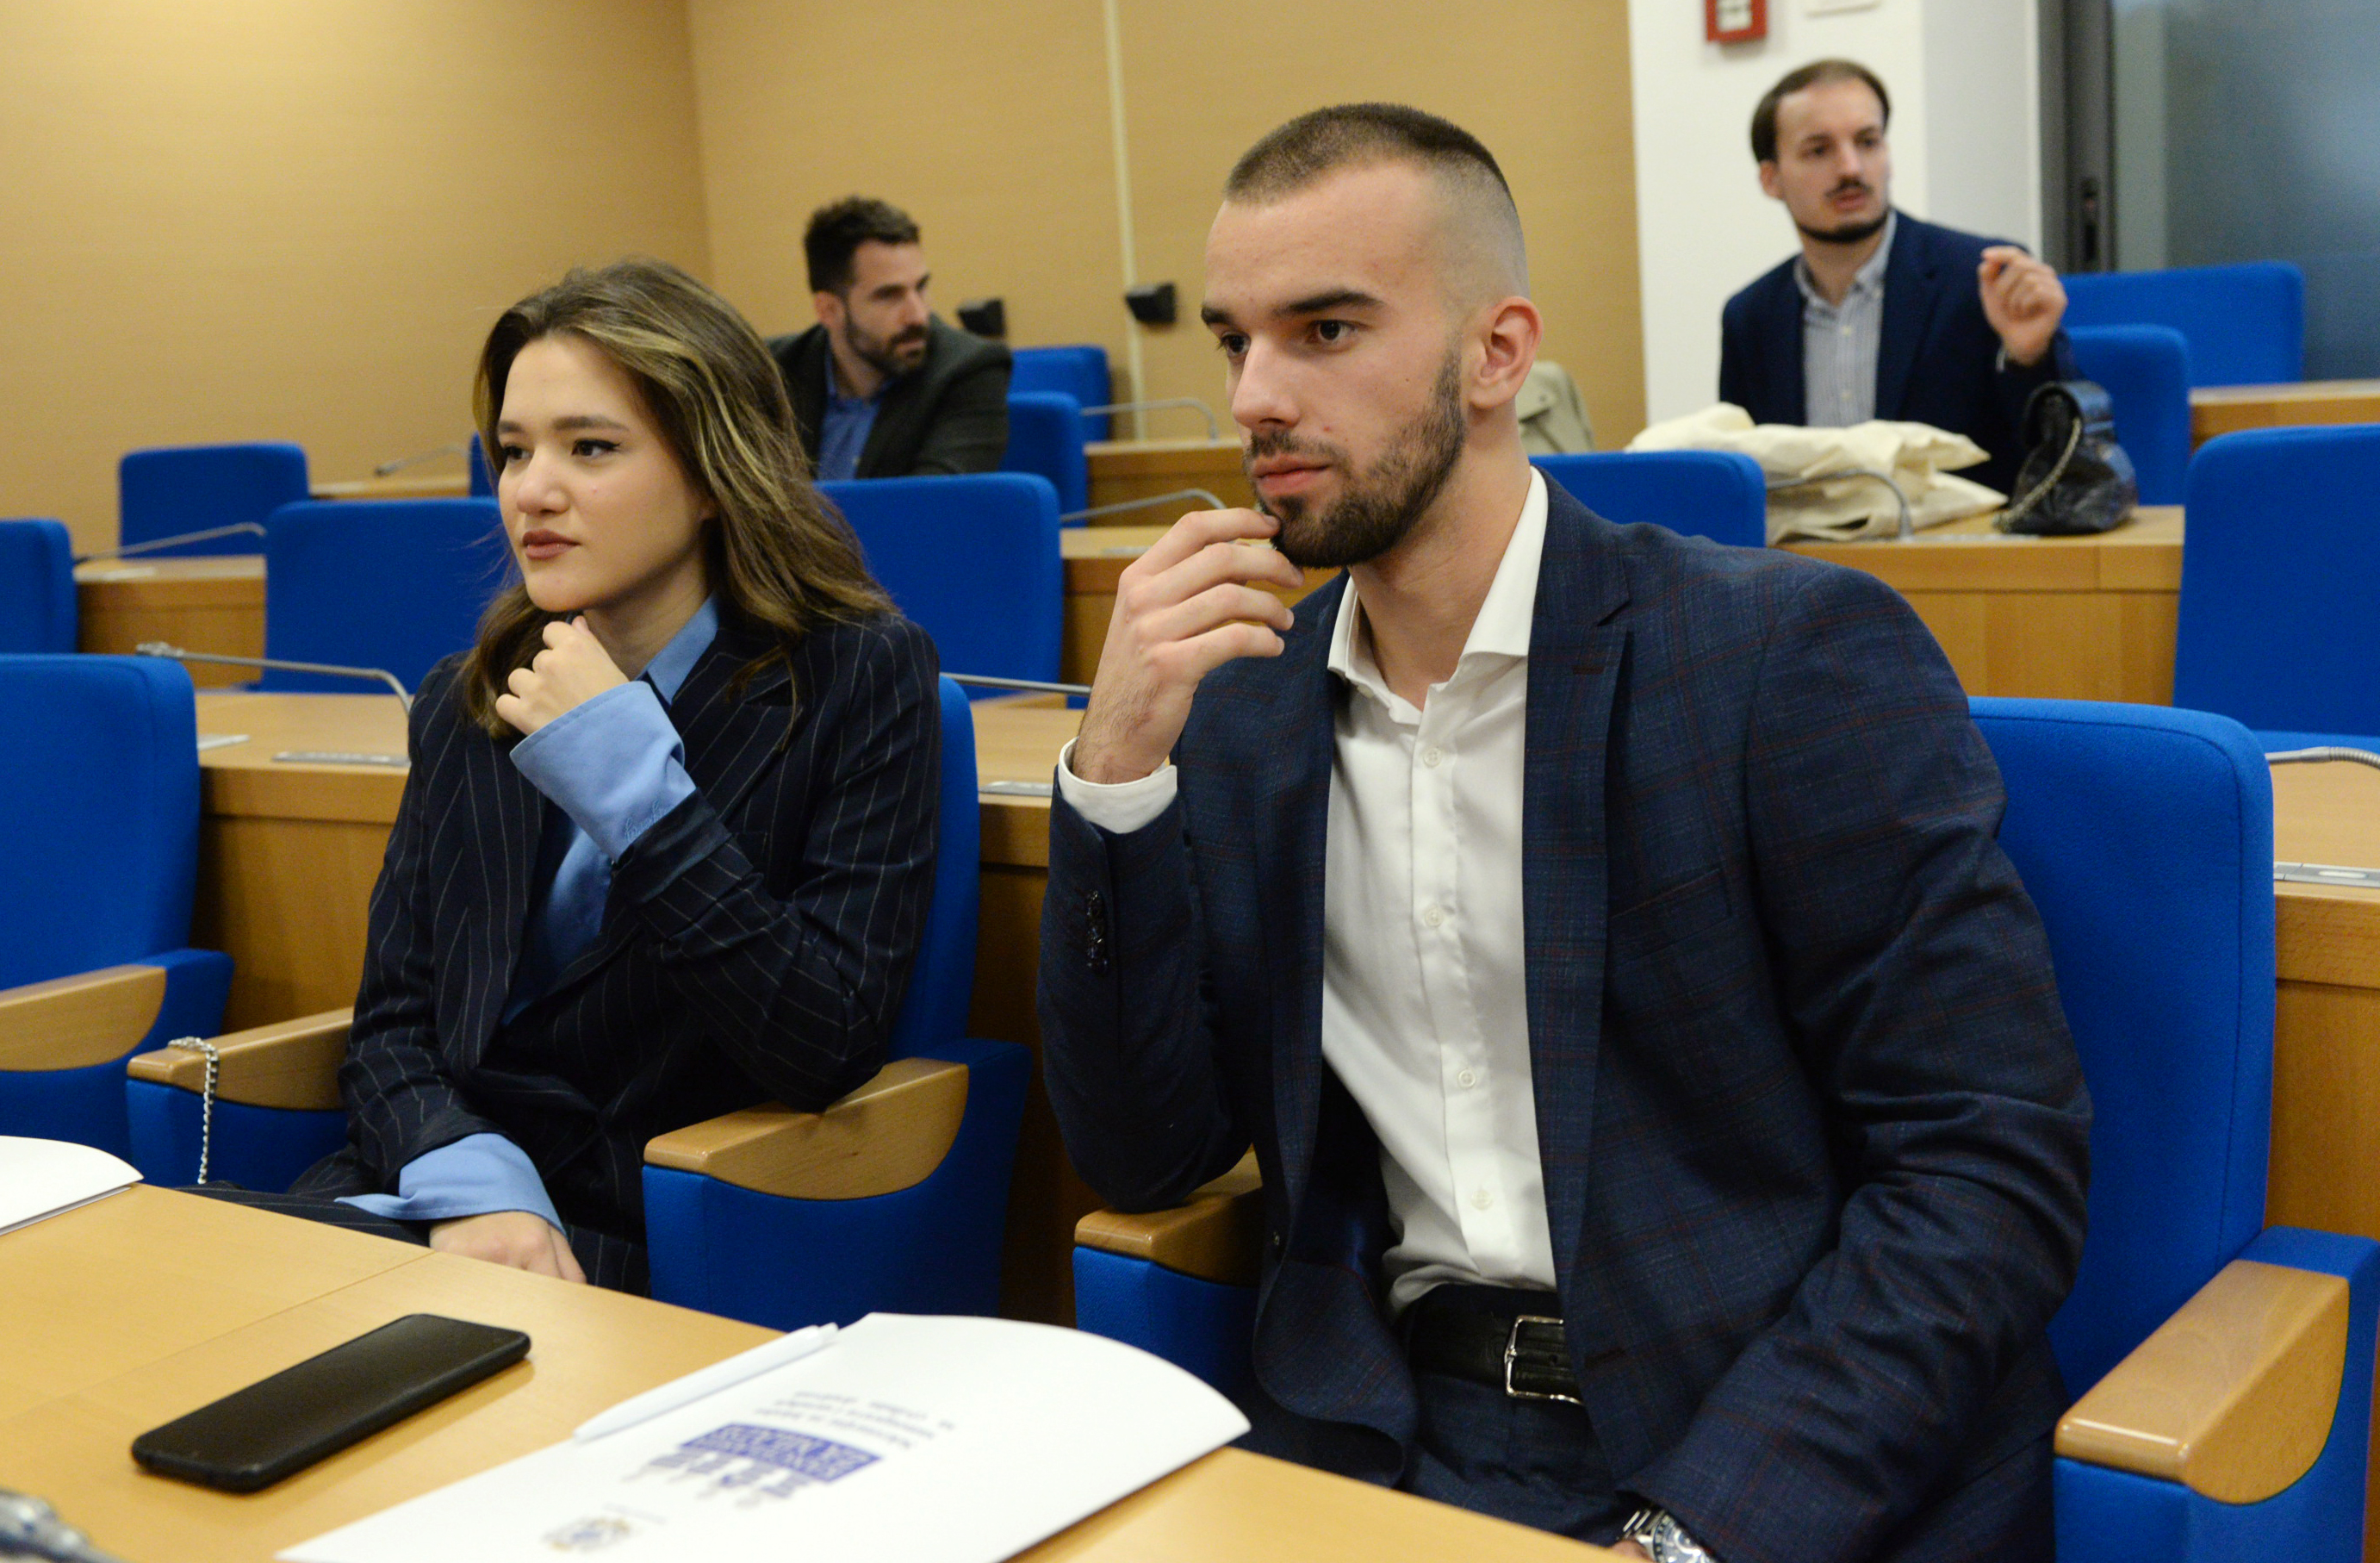 Međunarodni dan studenata; Injac: Glavni grad će biti snažna podrška mladim ljudima u Podgorici